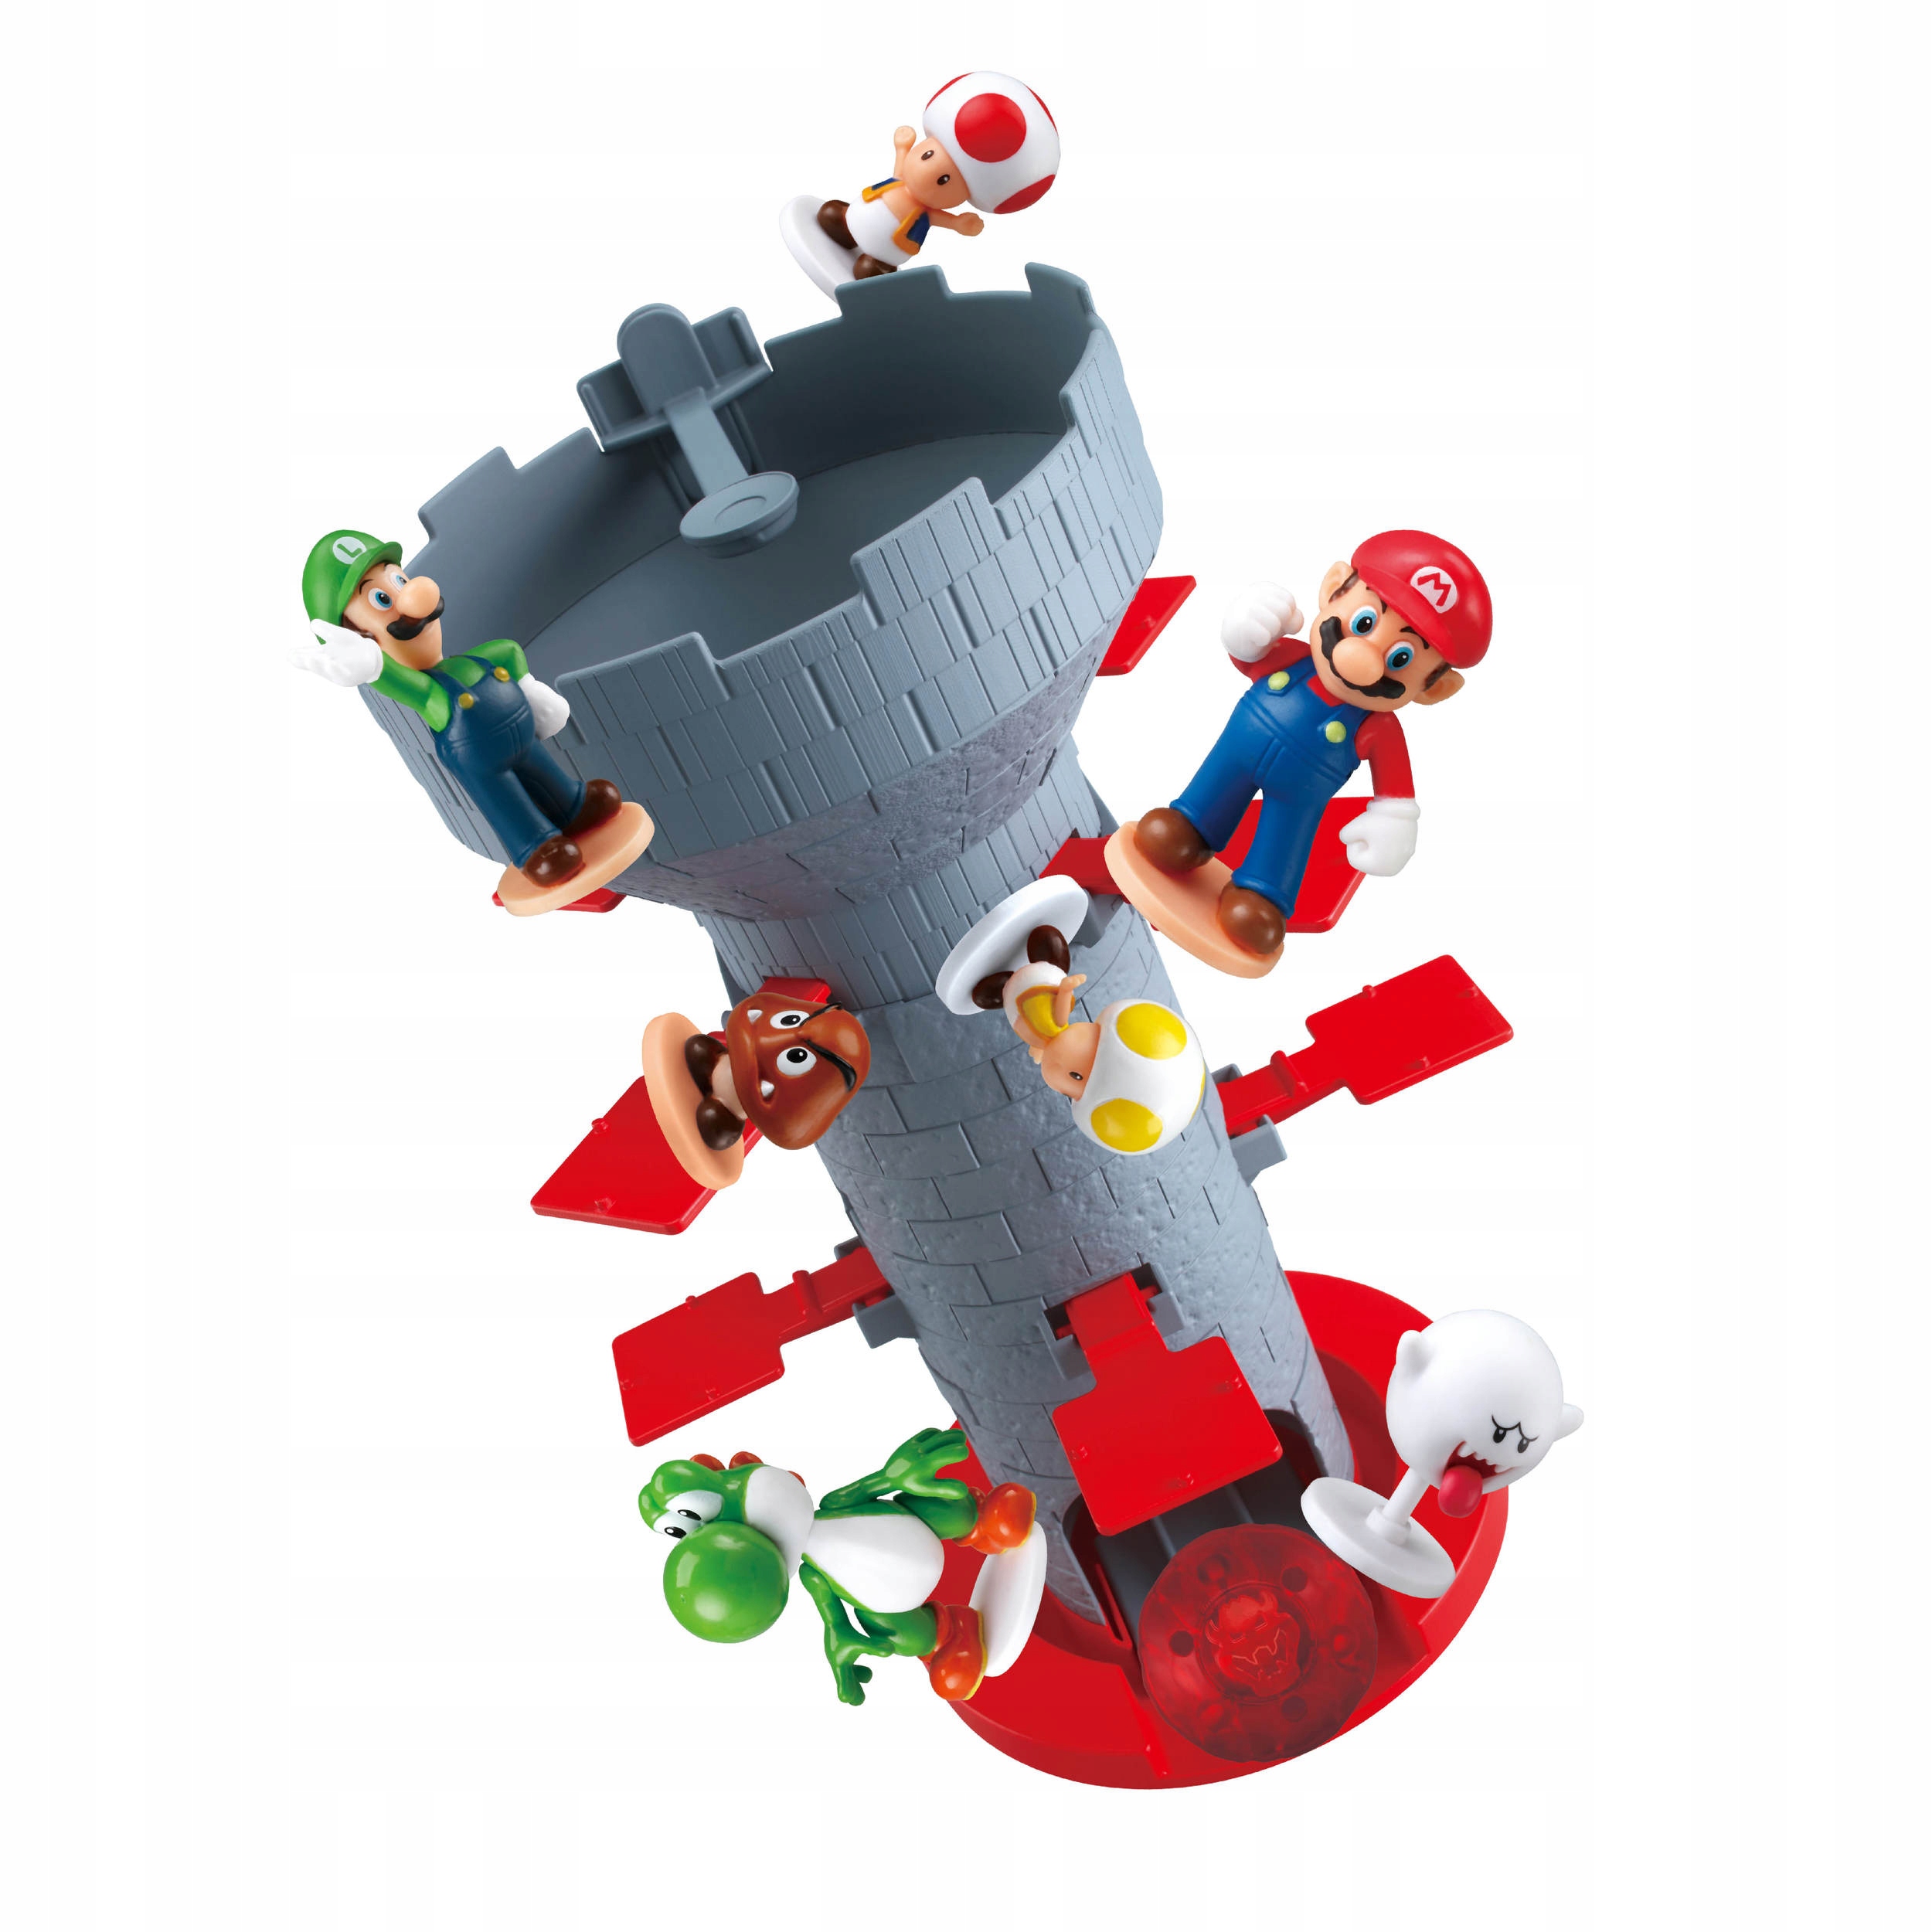 Mario hry - Super Mario a další